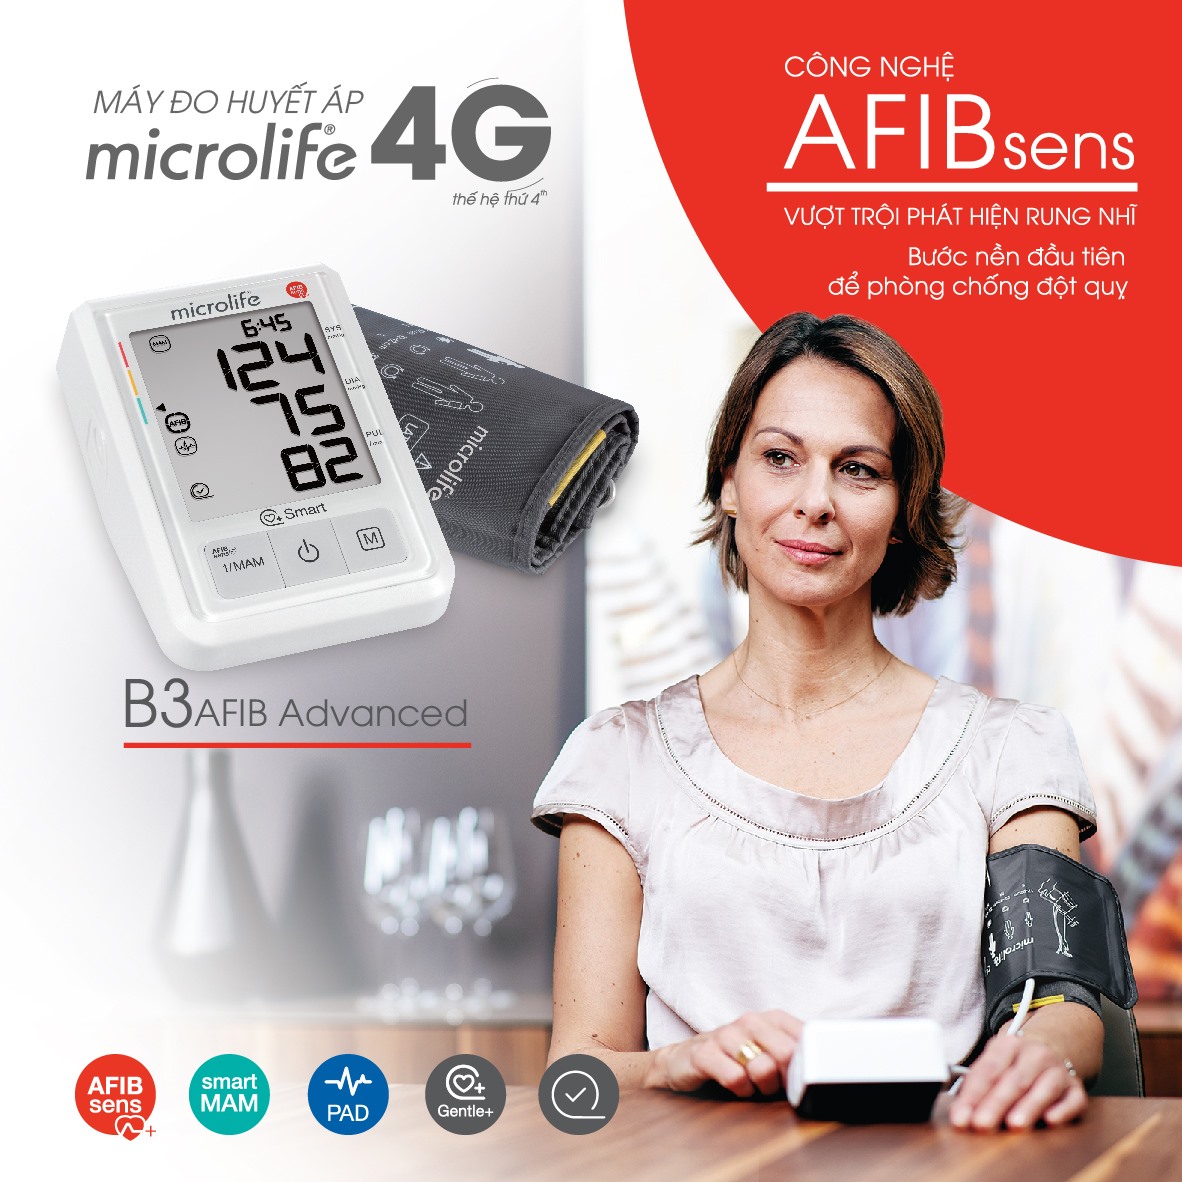 Thiết bị B3 AFIB Advanced hỗ trợ chuẩn đoán bệnh huyết áp tại nhà 